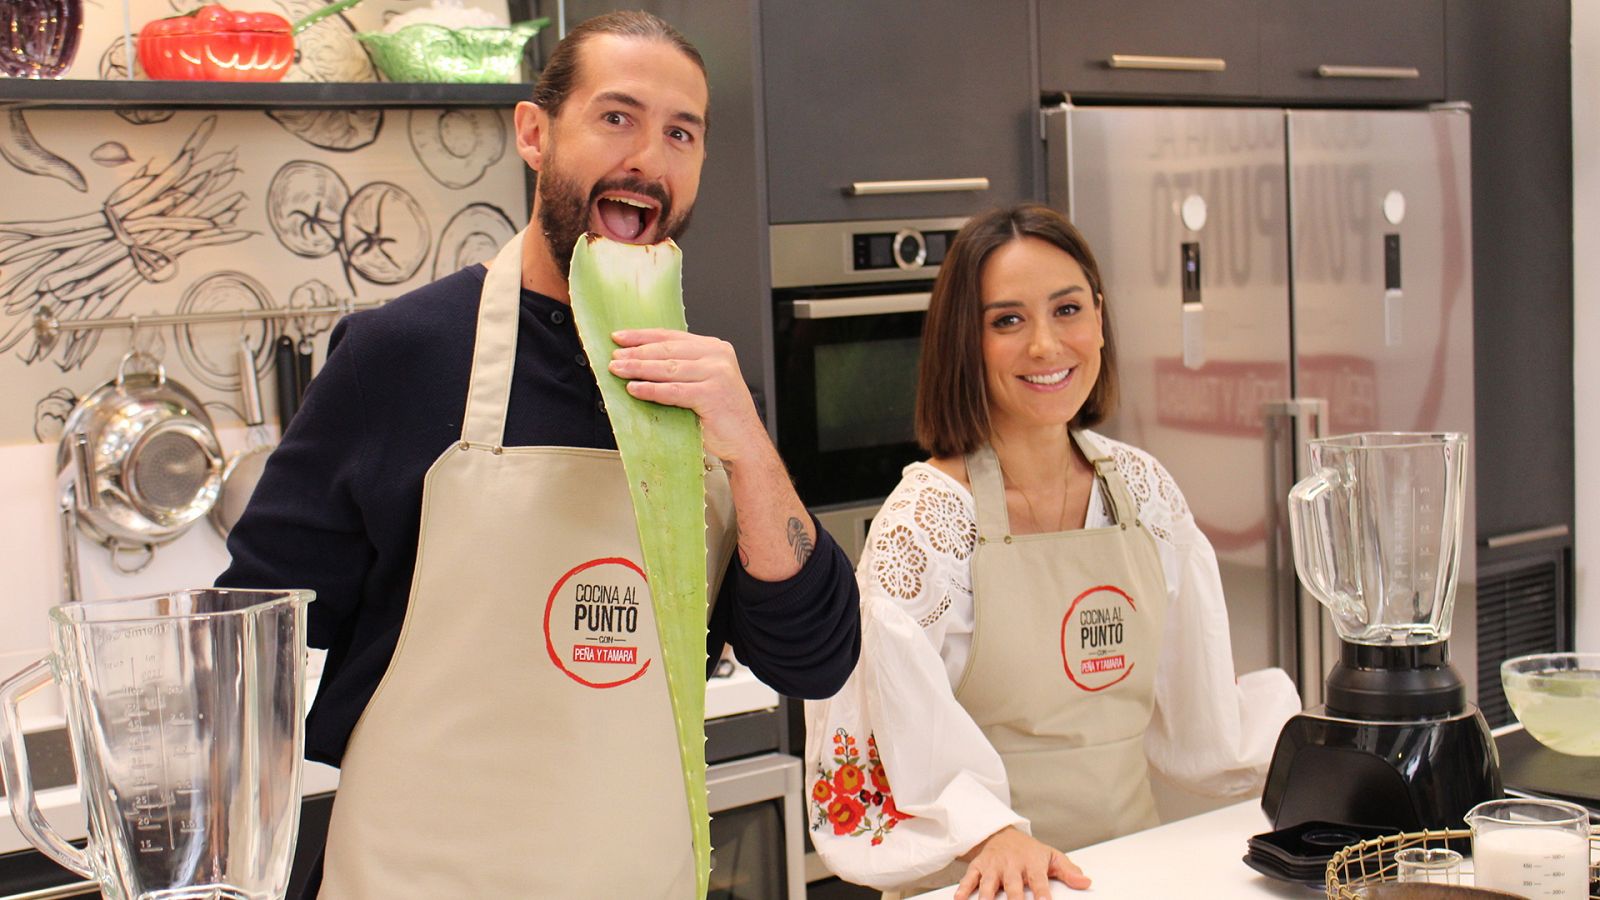 Cocina al punto con Peña y Tamara - El aloe - RTVE.es